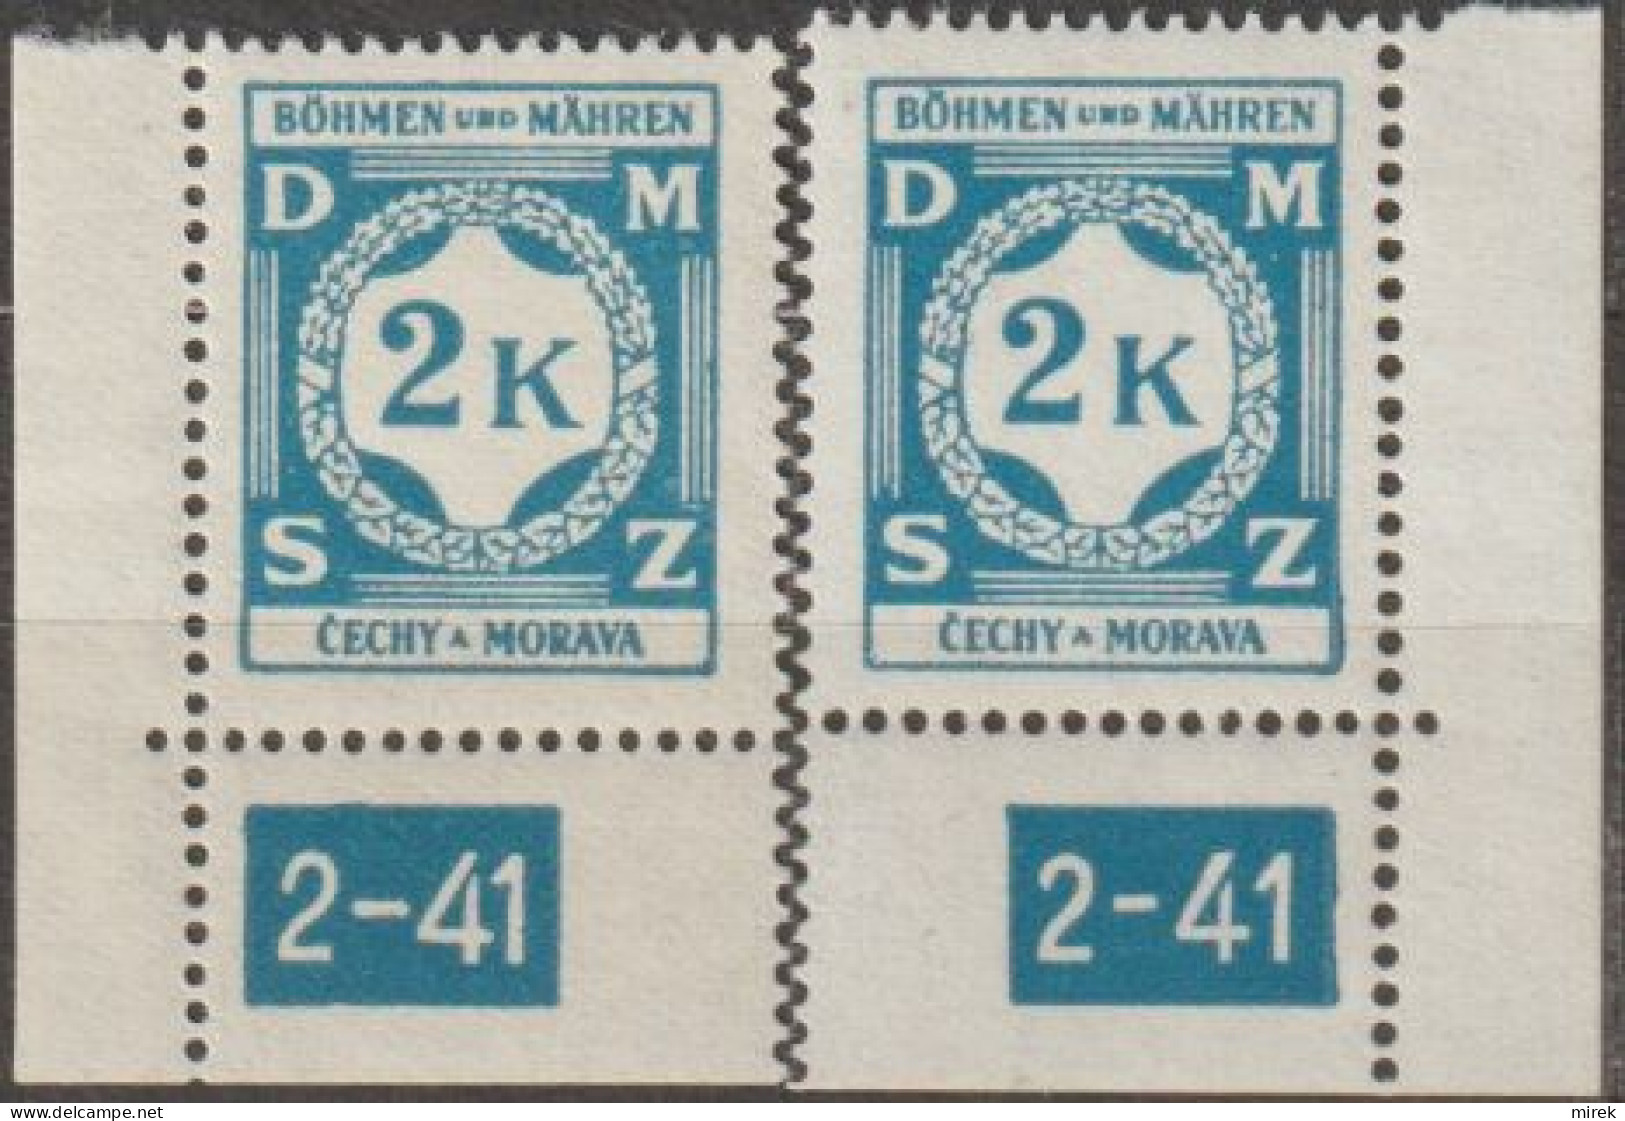 32/ Pof. SL 9, Corner Stamps, Plate Number 2-41 - Ongebruikt